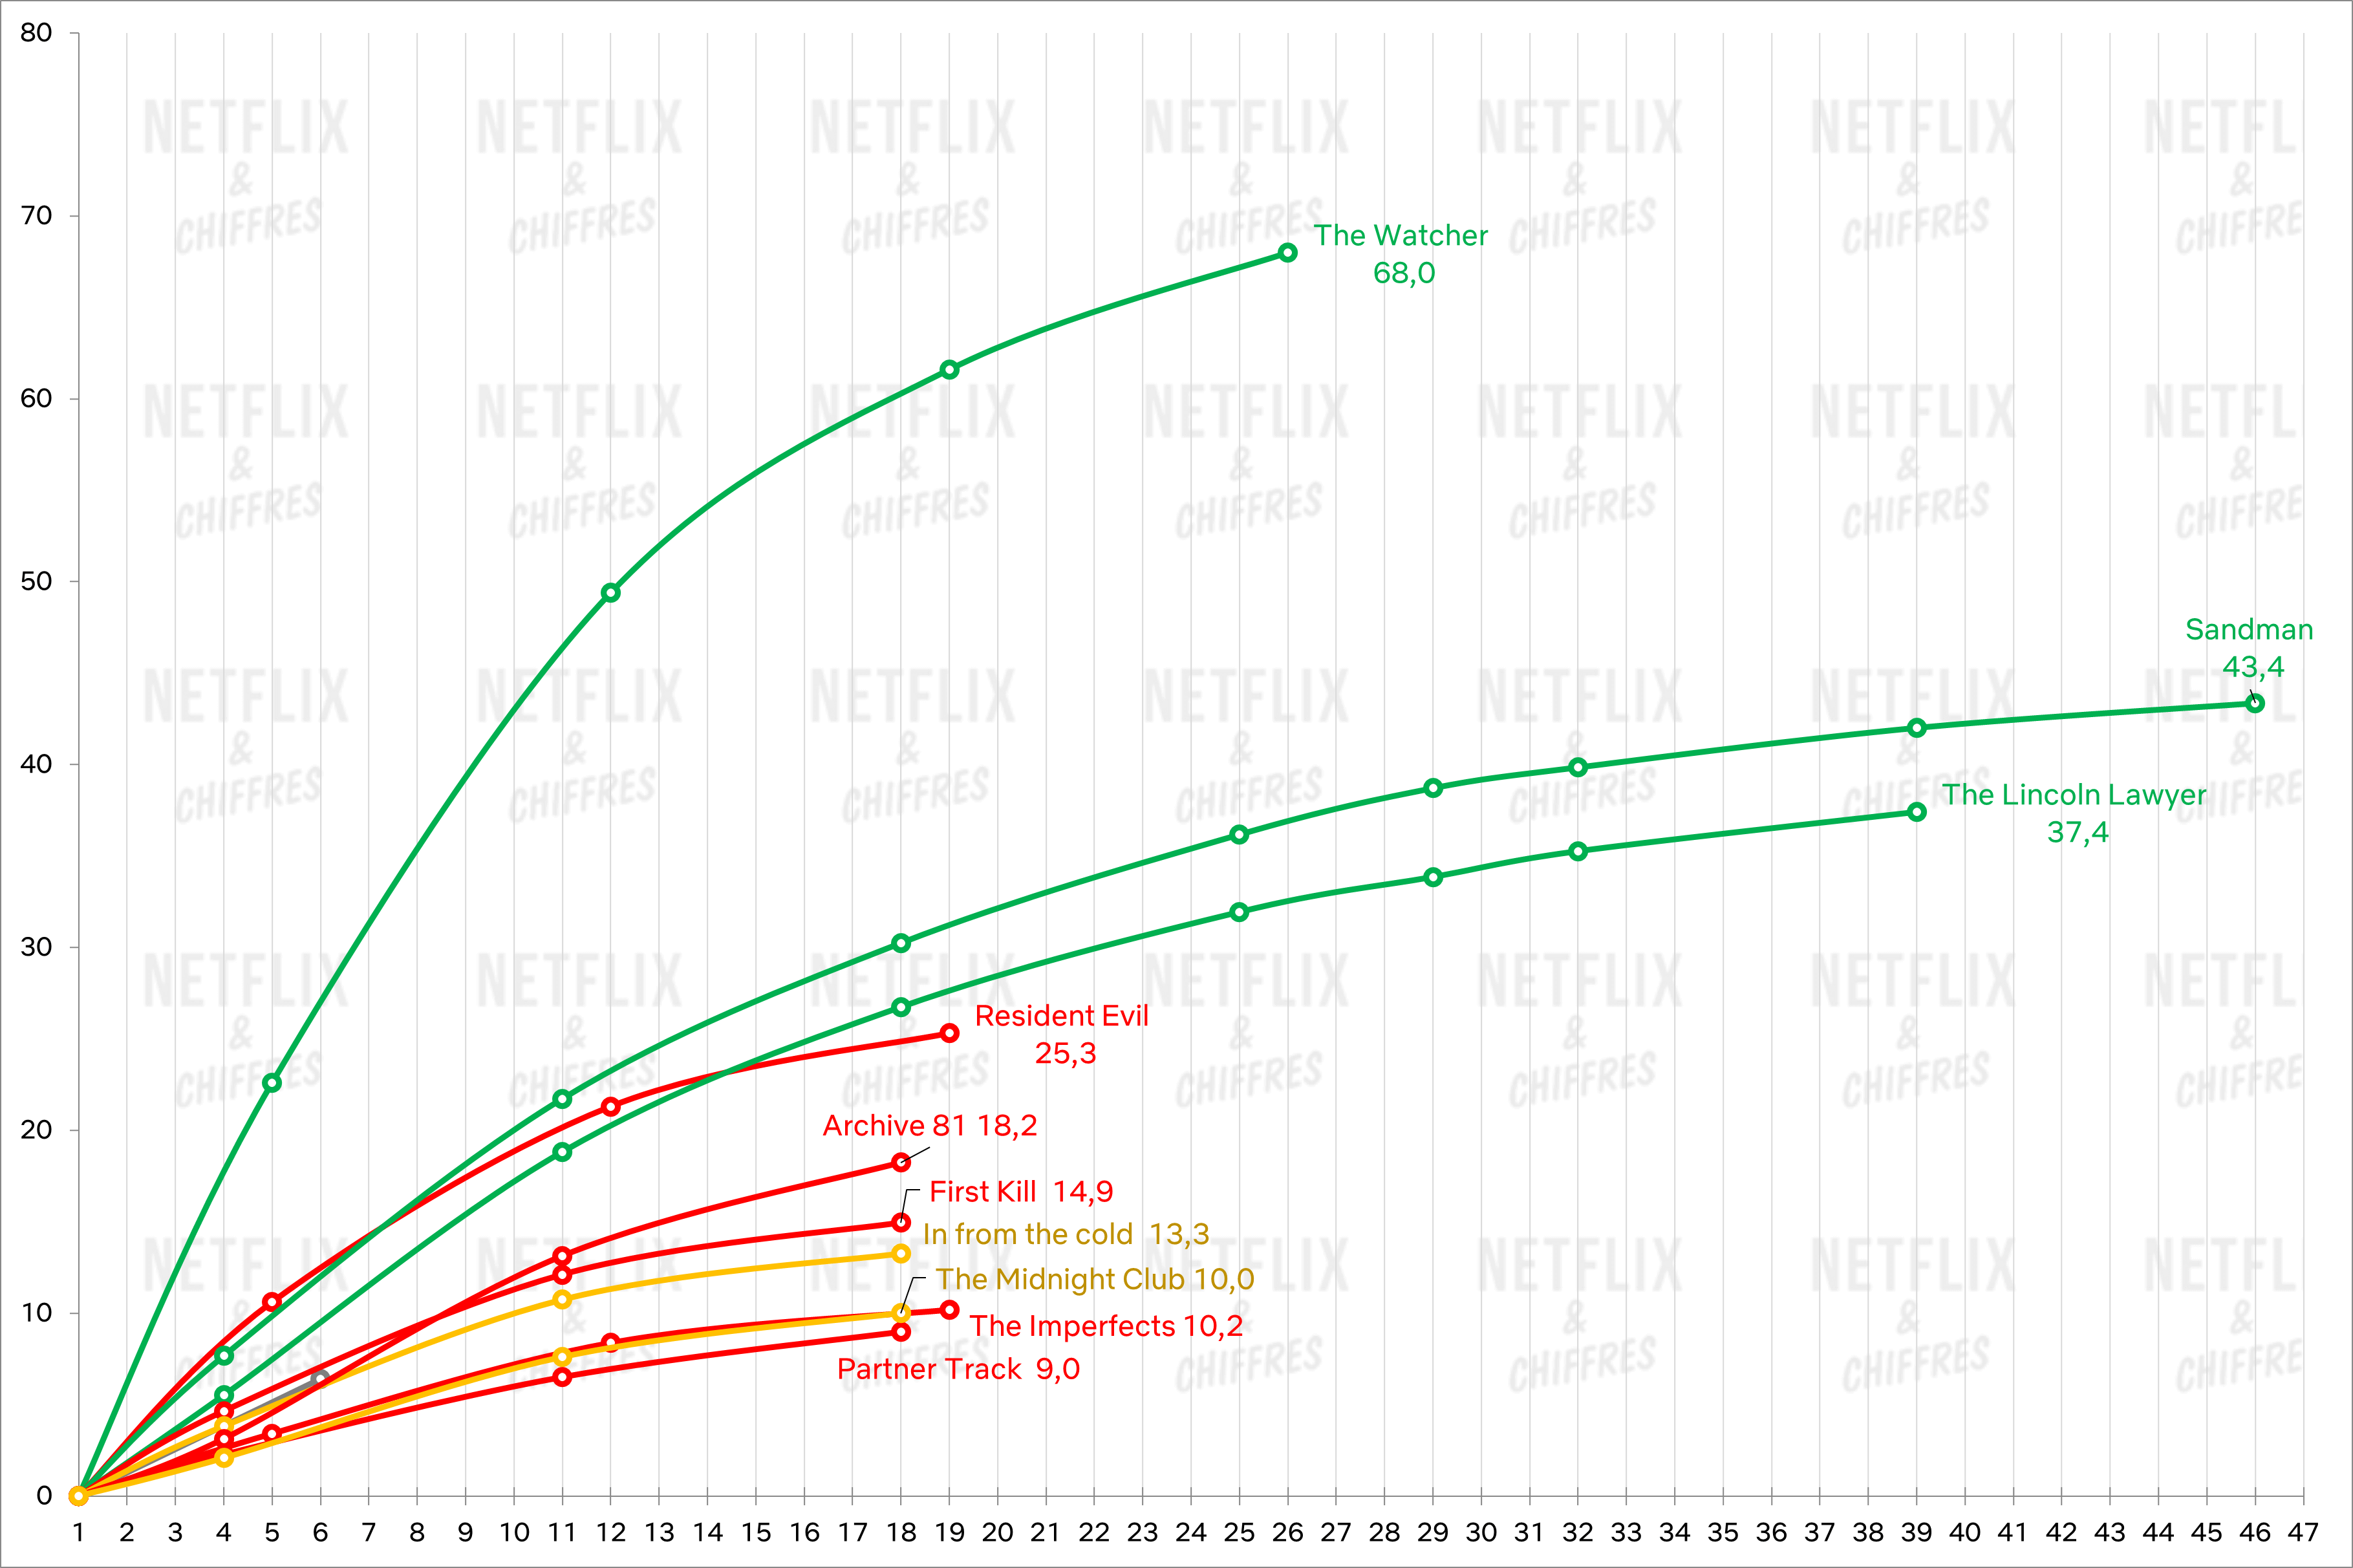 fuksisarja raportoi Netflixin uusimista peruutuksista